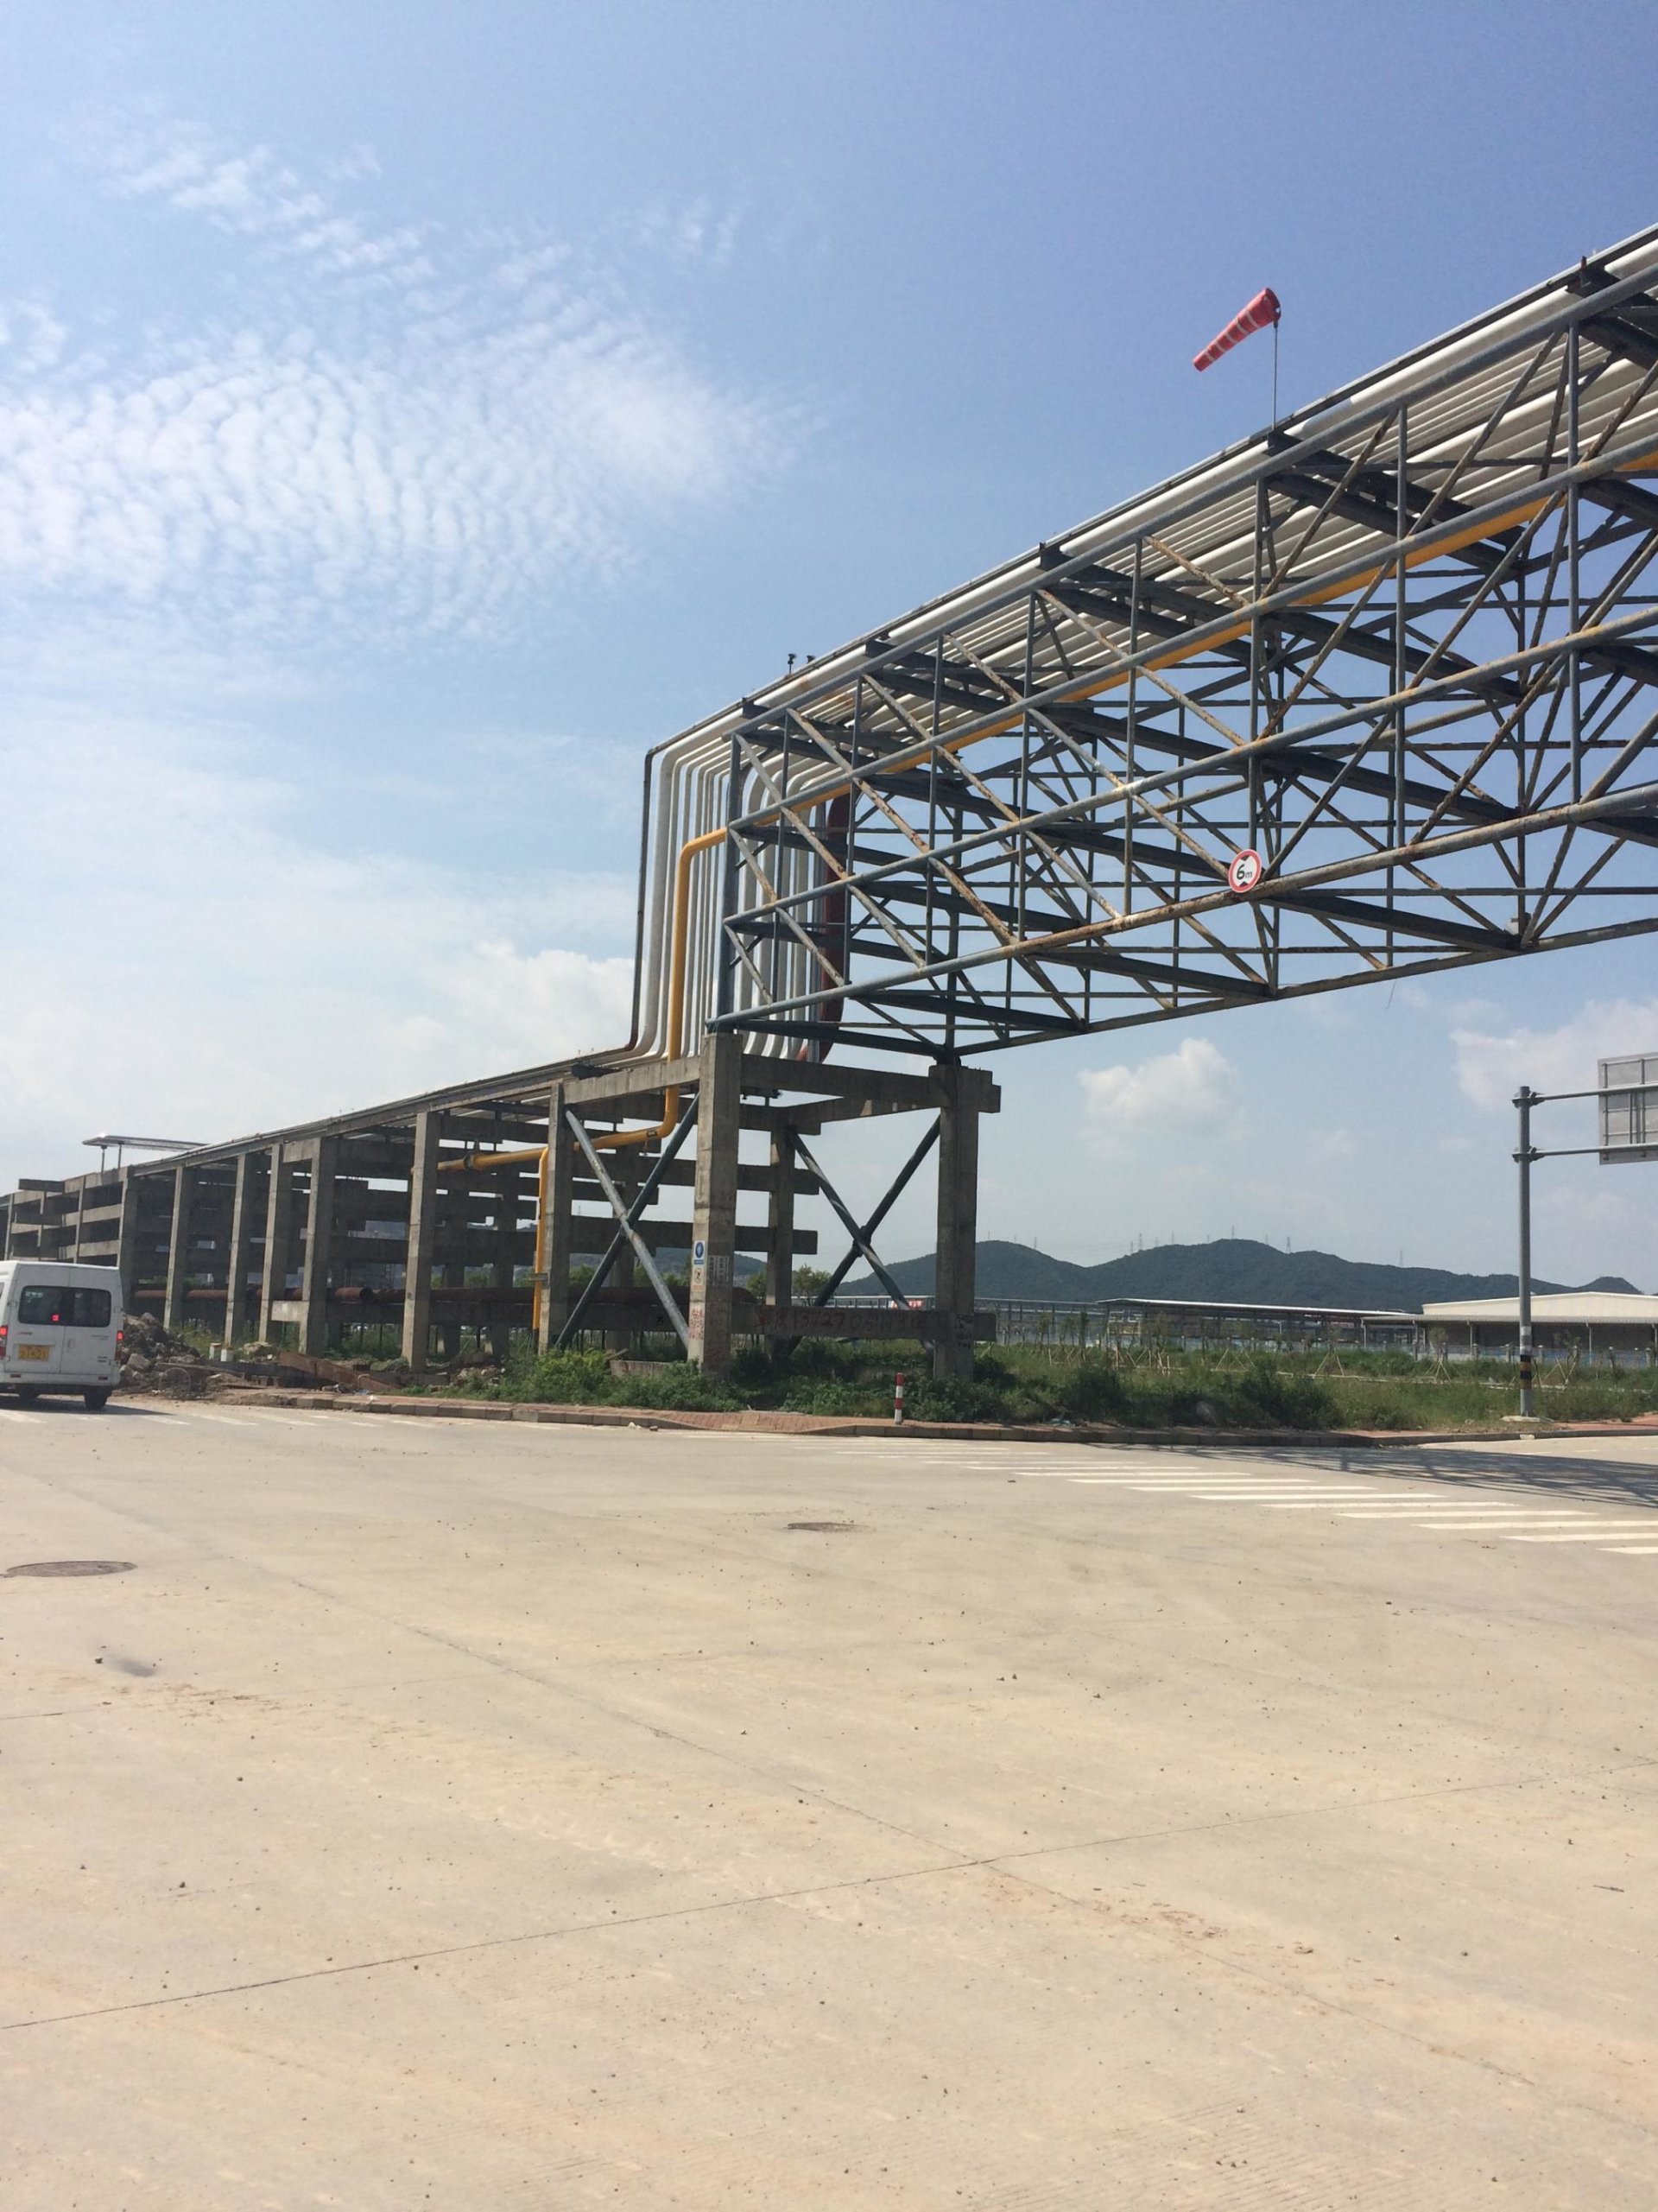 珠海中南匯化工有限公司石化碼頭至倉儲庫區管廊建設工程